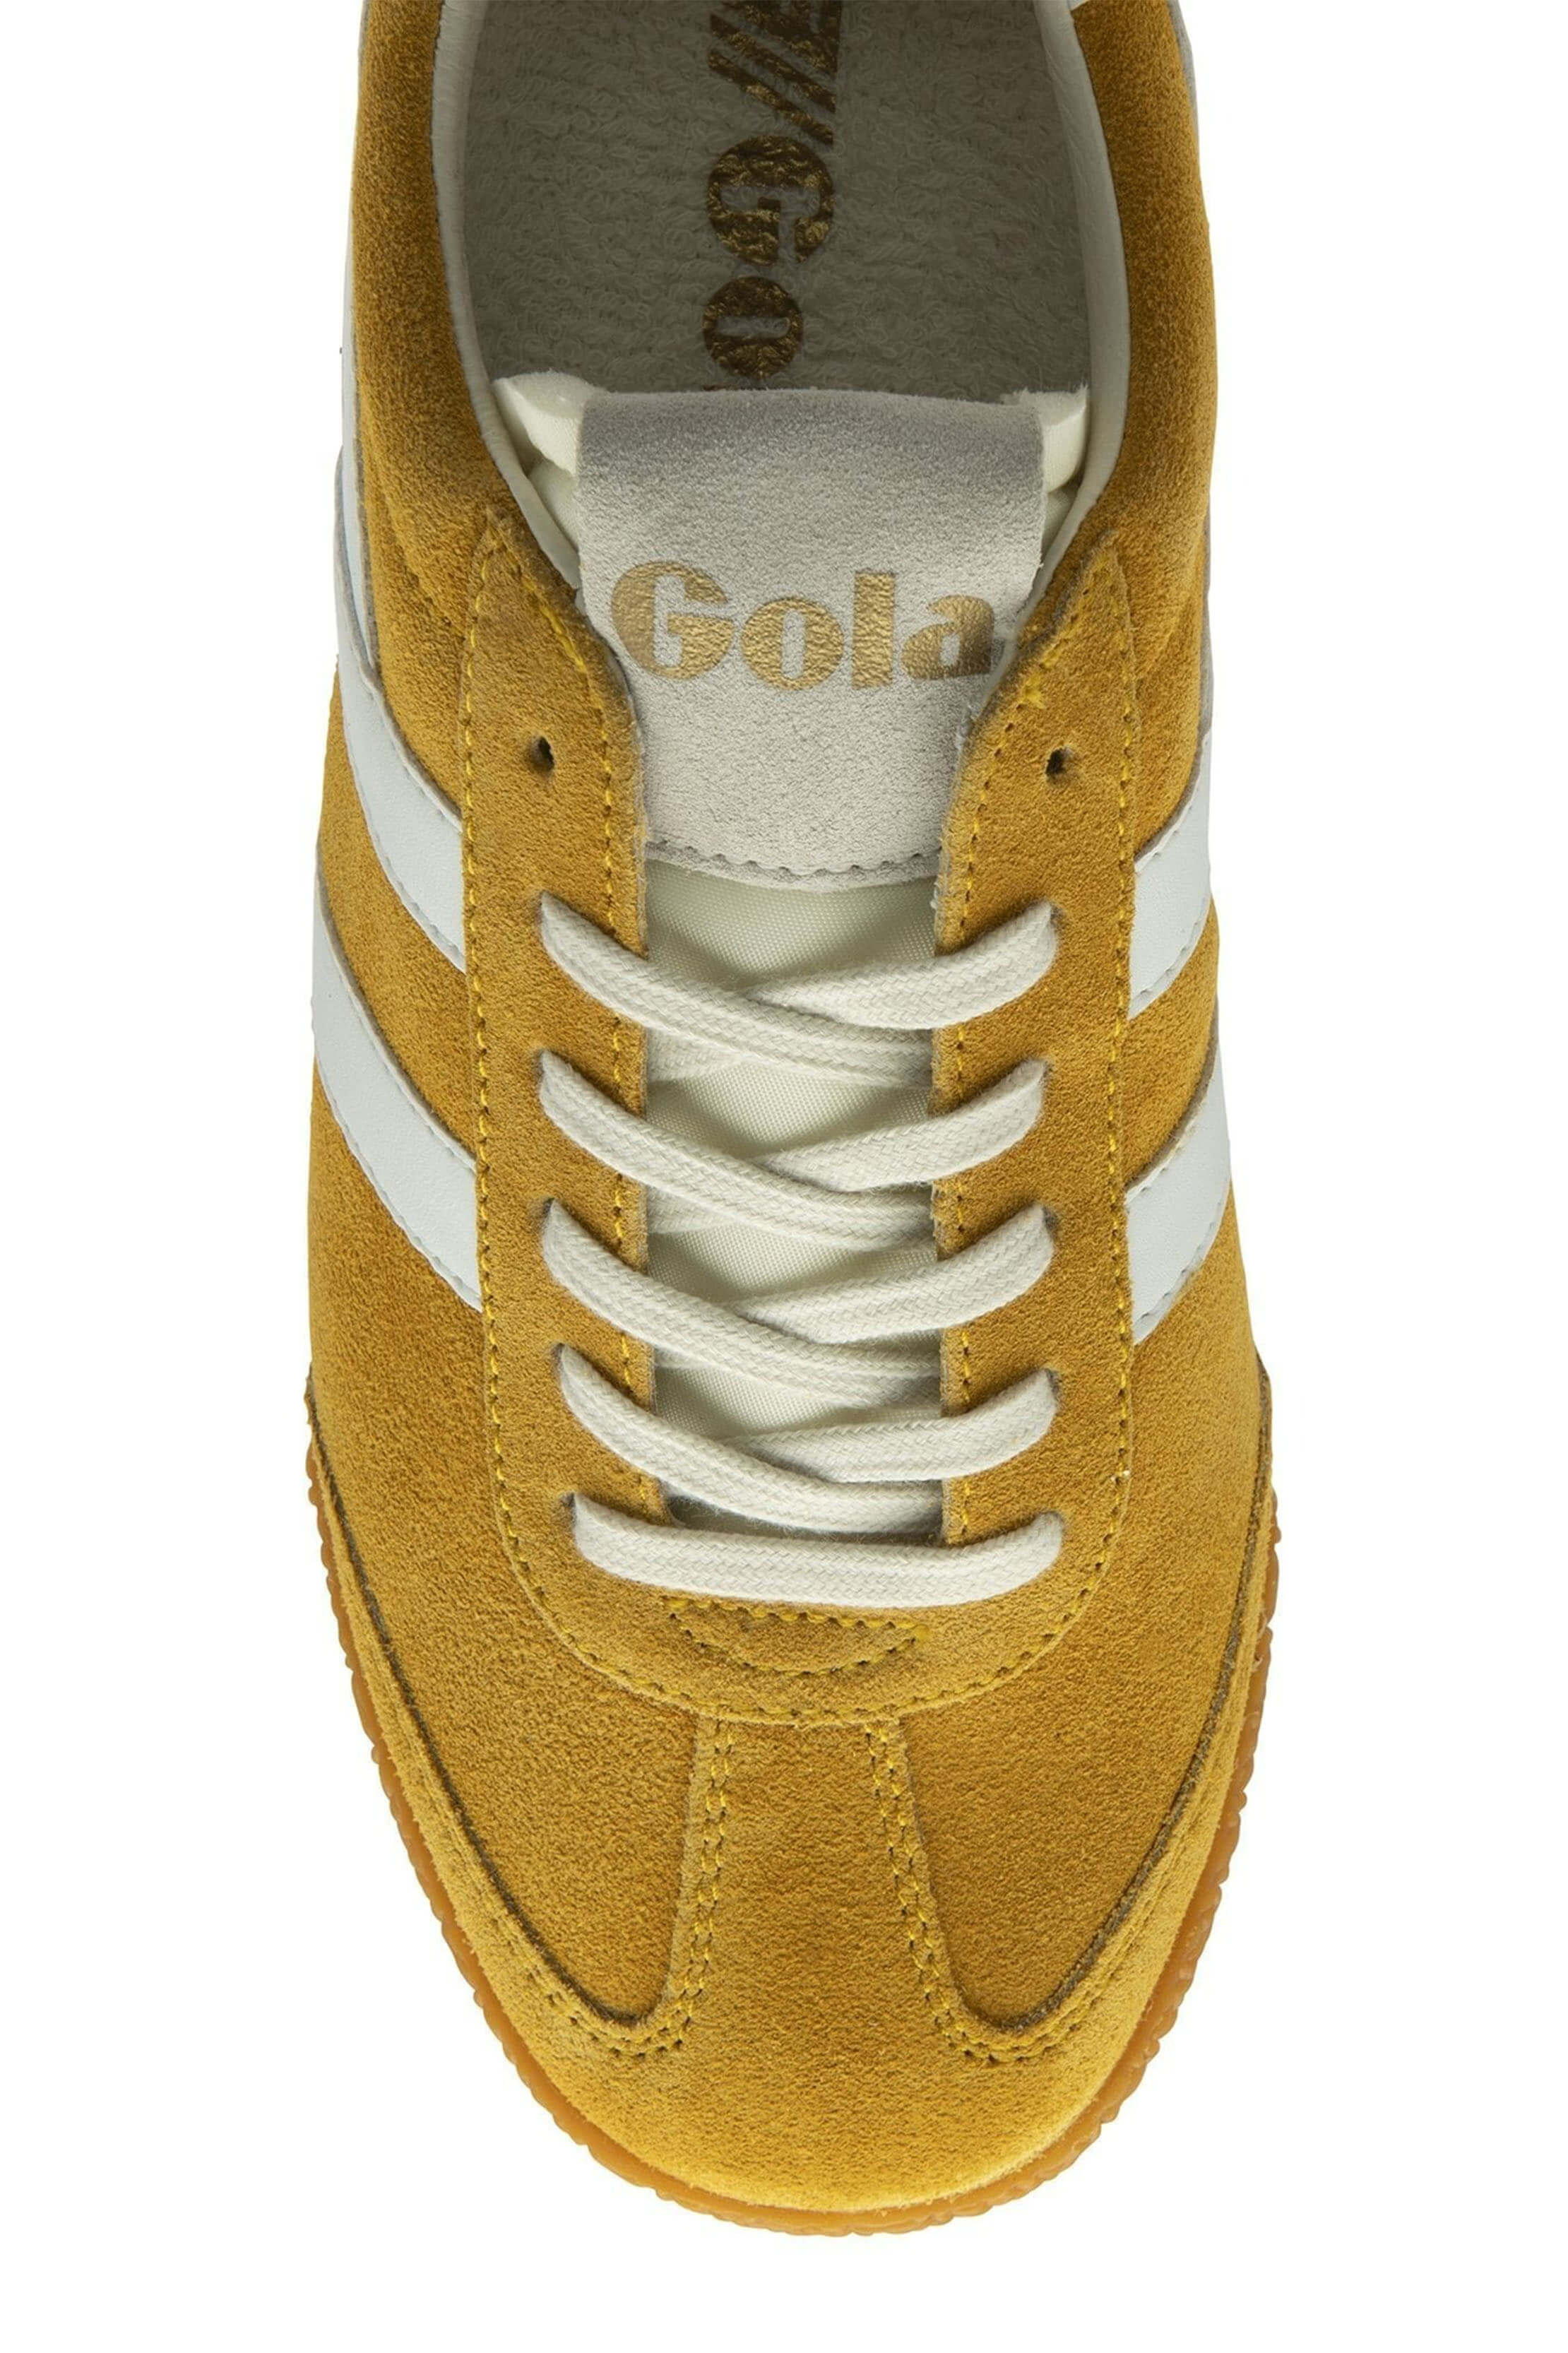 Gola elan sneaker in sun yellow